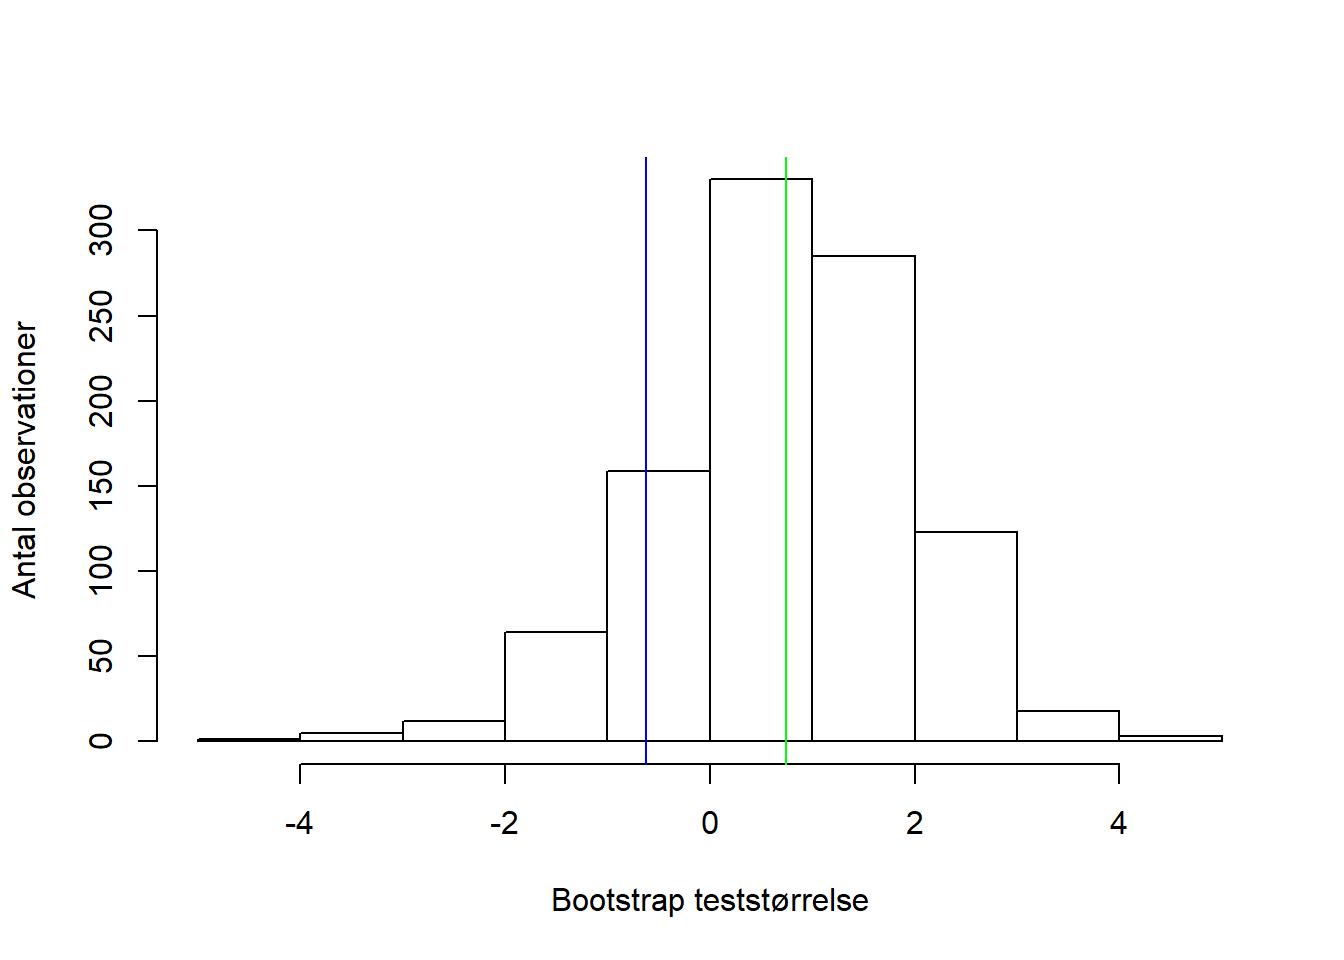 Fordelingen af bootstrap-teststørrelserne, hvor den blå linje markerer den observerede teststørrelse, og den grønne linje markerer fordelingens middelværdi.